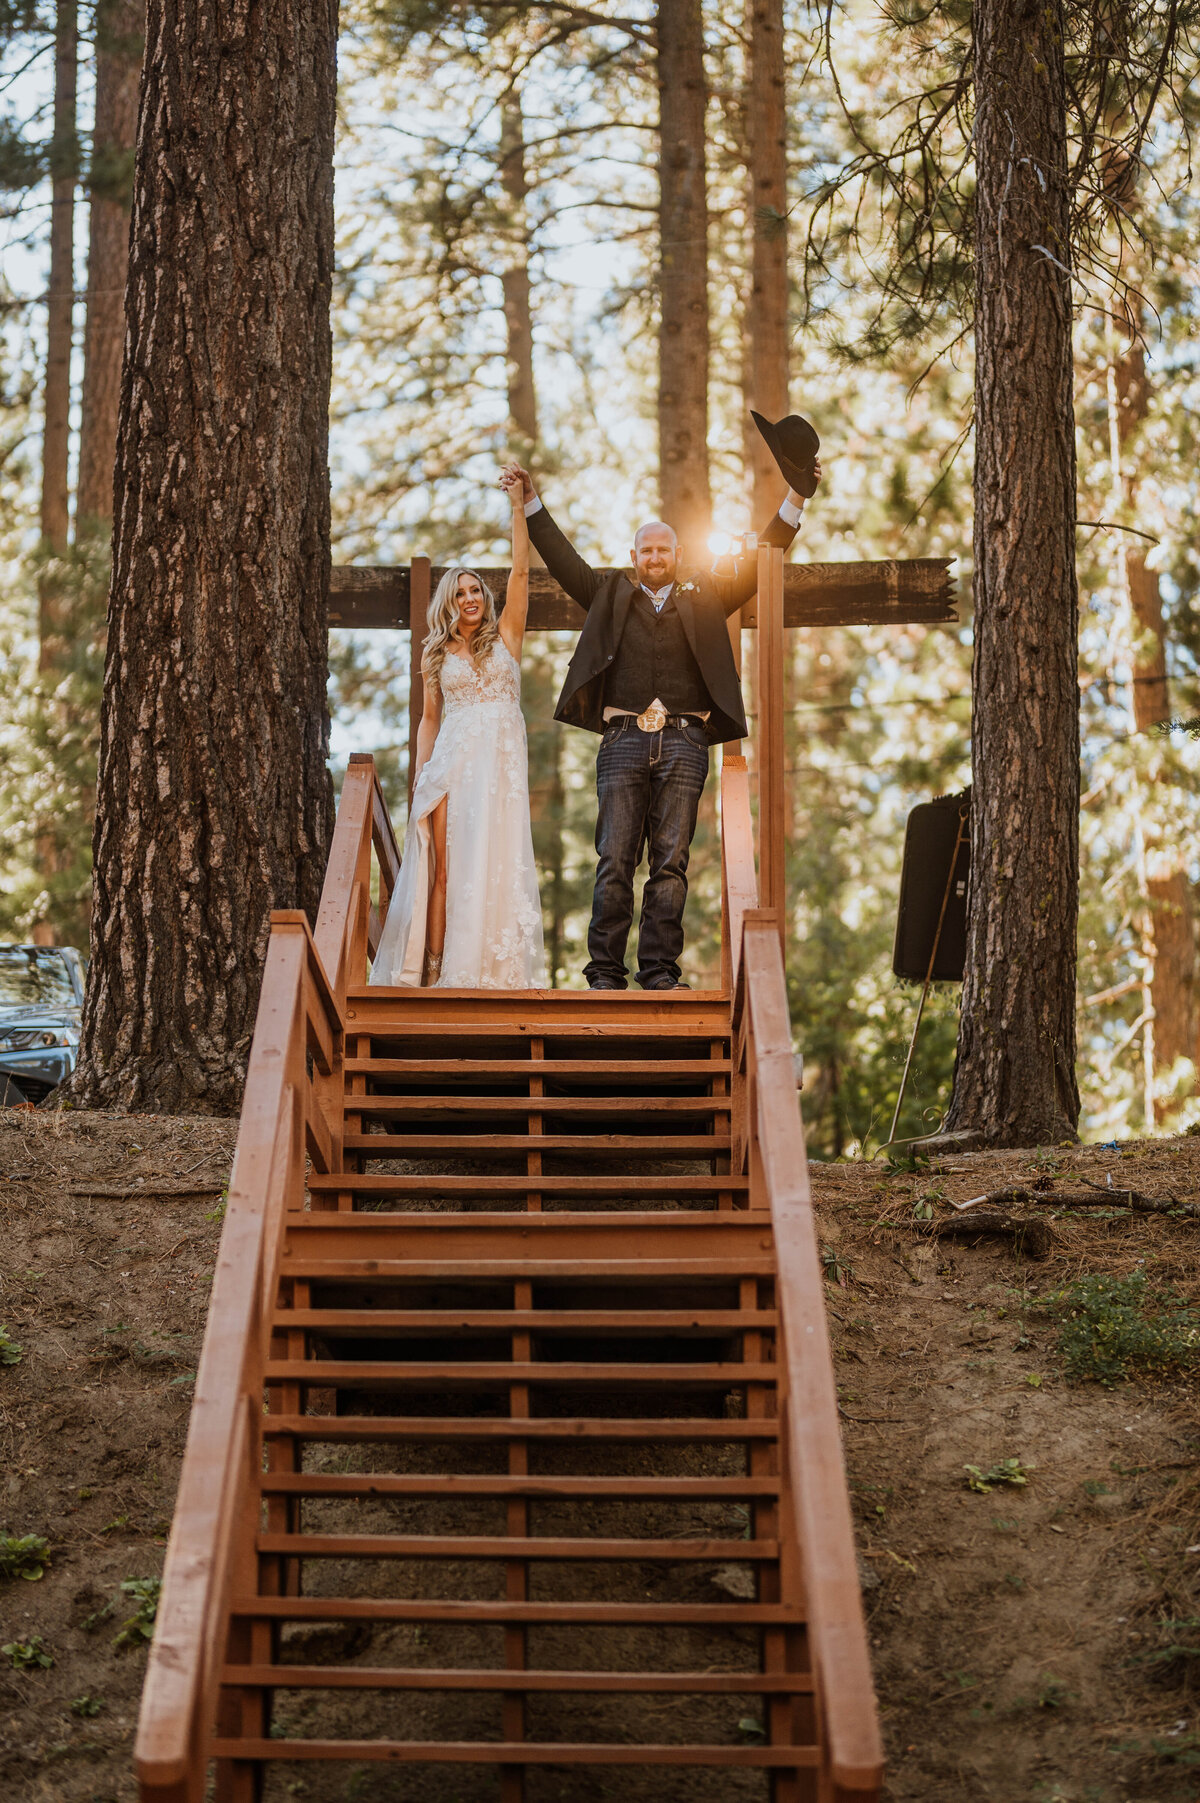 Sardine Lake wedding, Lake Tahoe wedding photographer, Sardine Lake Wedding Photography, Wedding photographer near me, Lake Tahoe Wedding Photographer, Reno Wedding Photographer